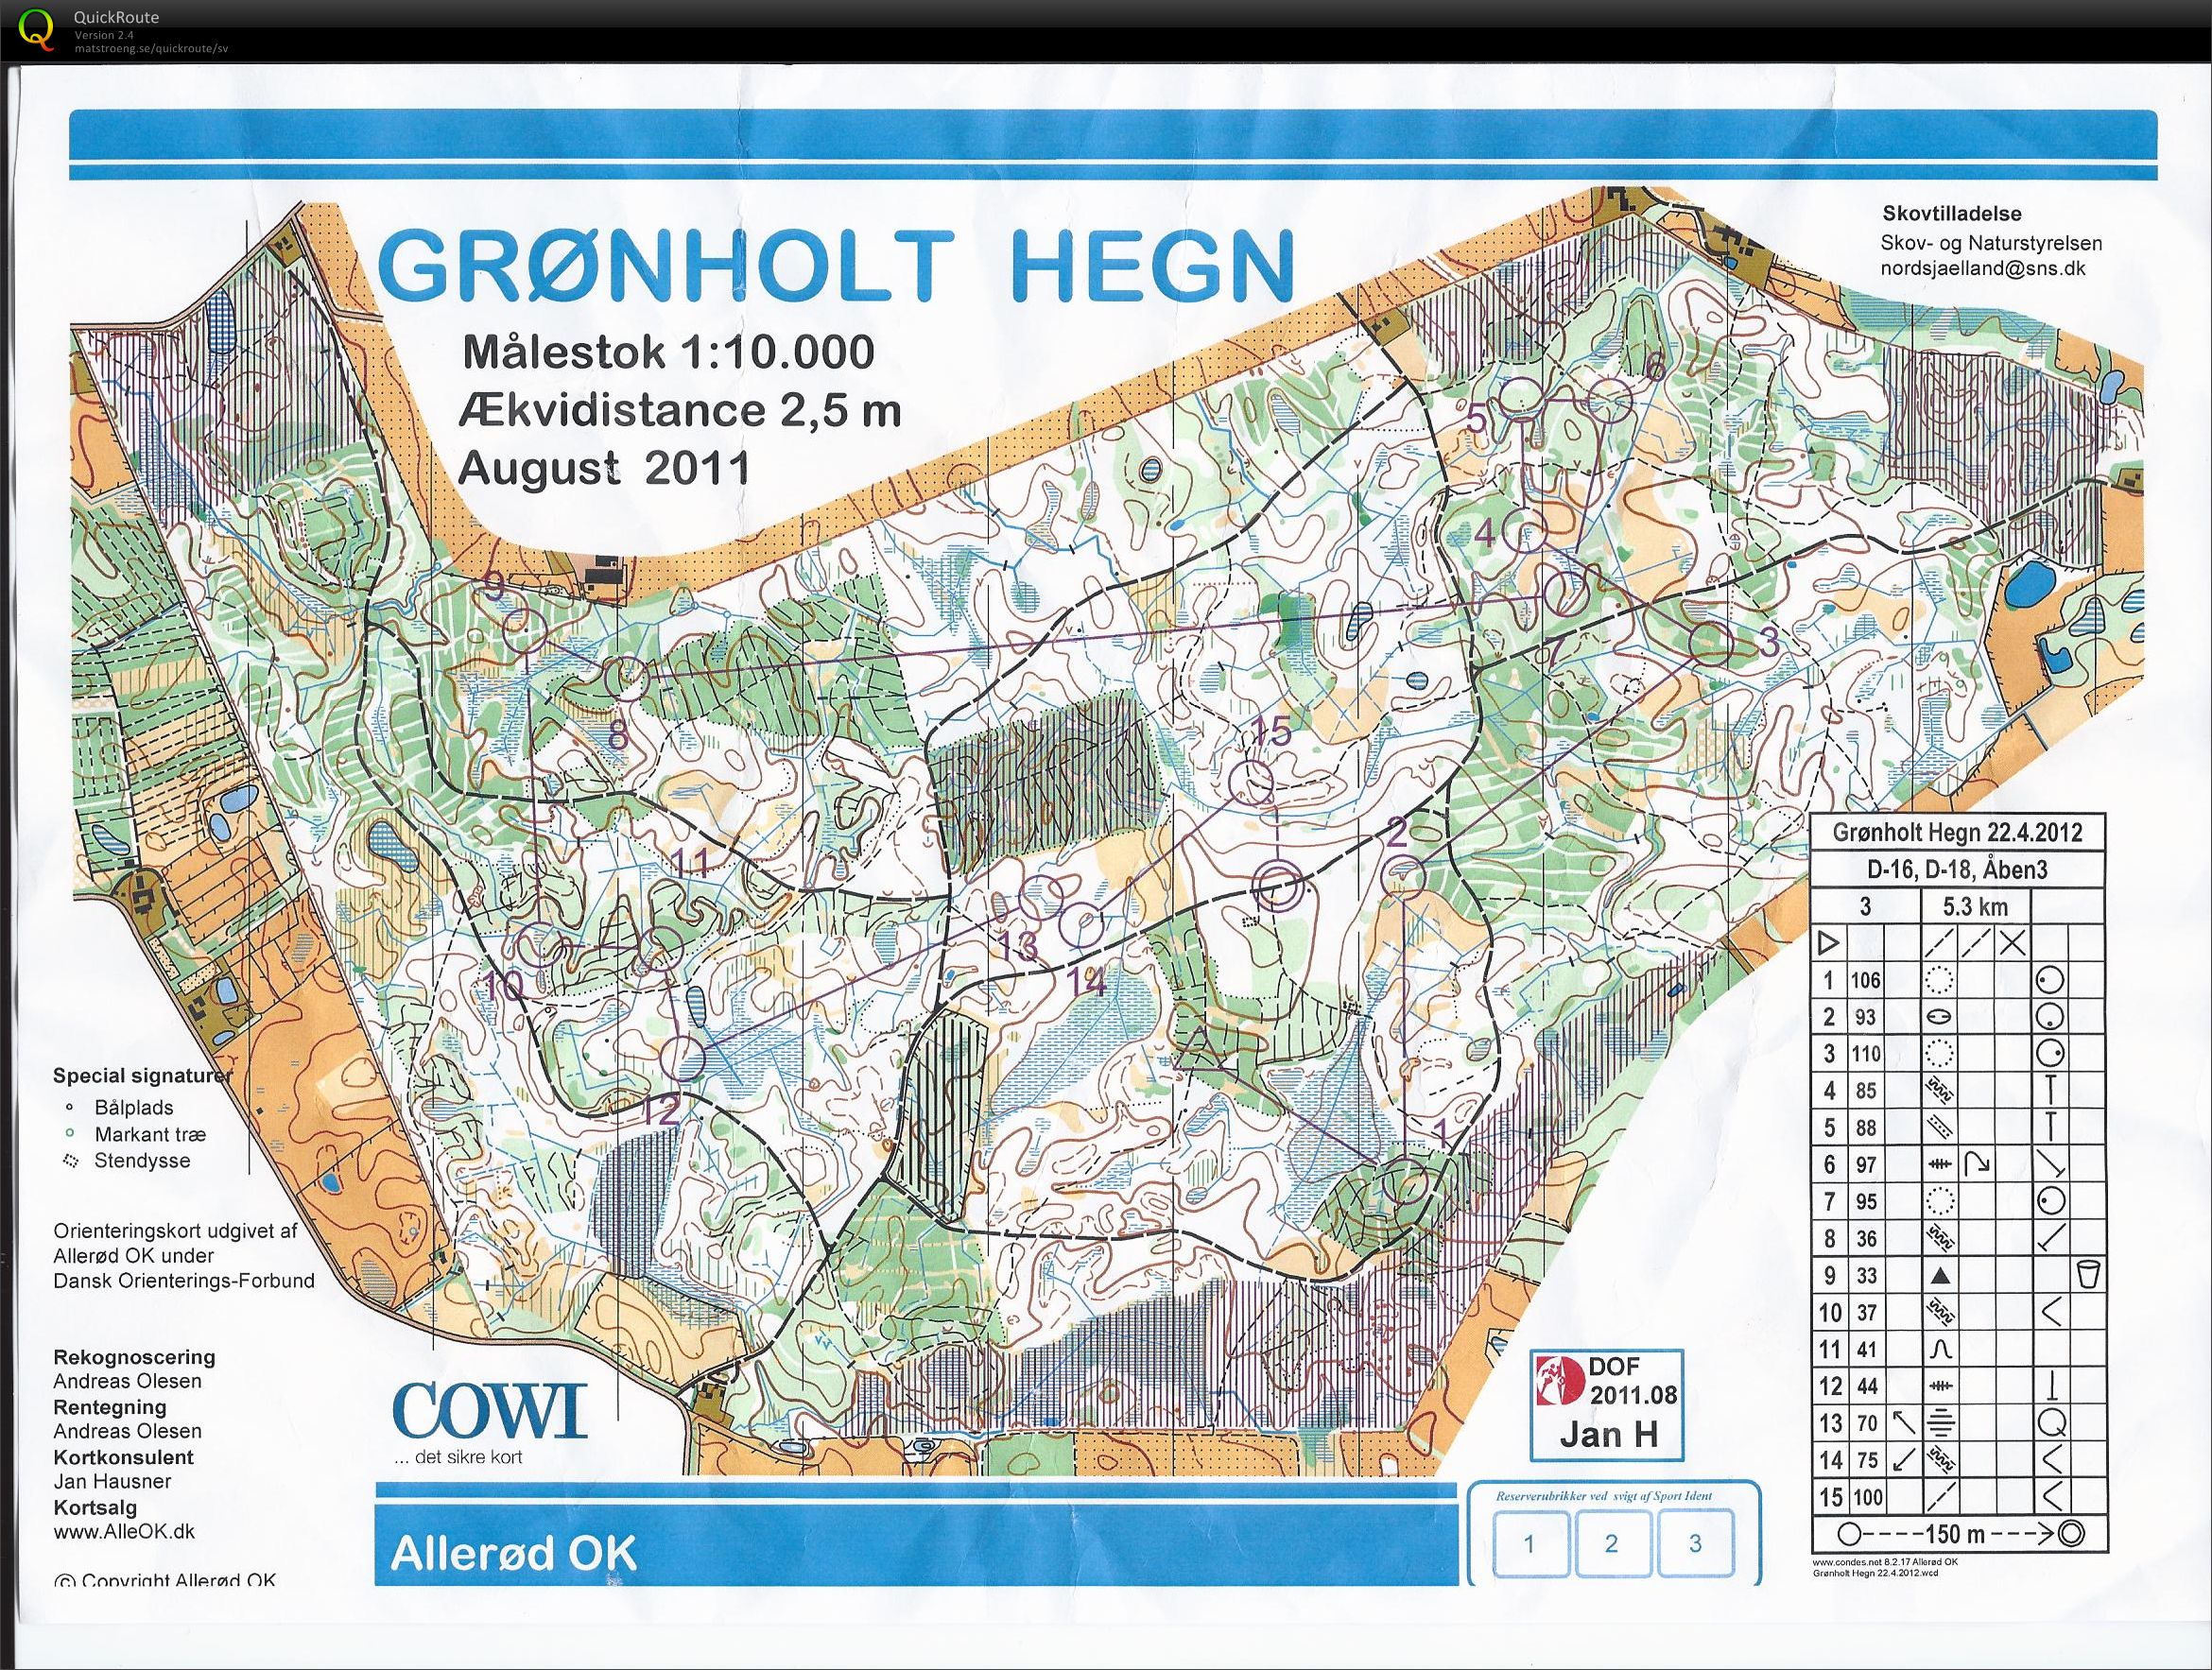 "Grønholt O-challenge" (22/04/2012)